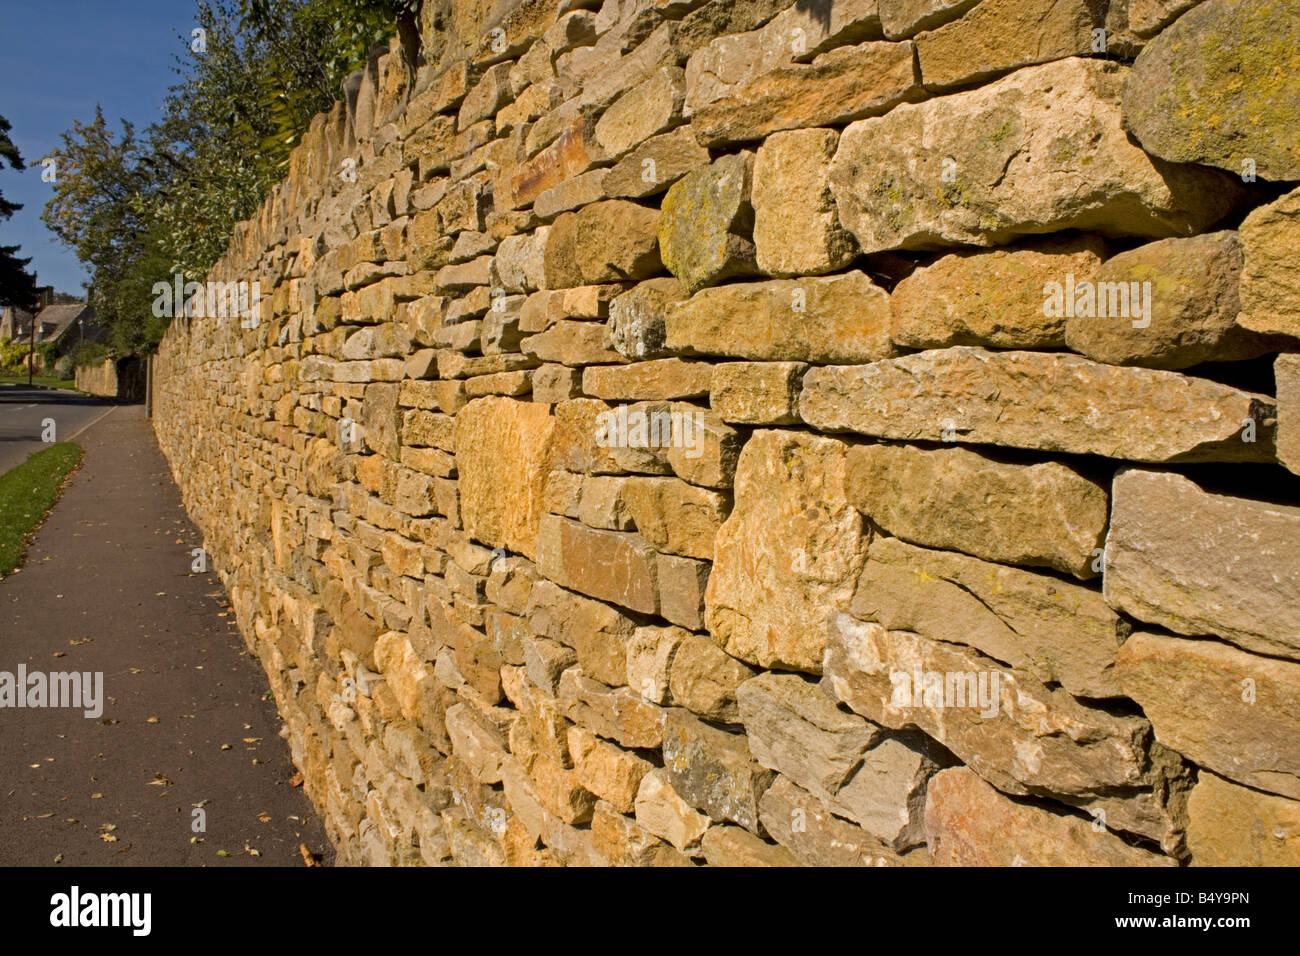 Cotswold stone wall, Cotswolds, UK Stock Photo